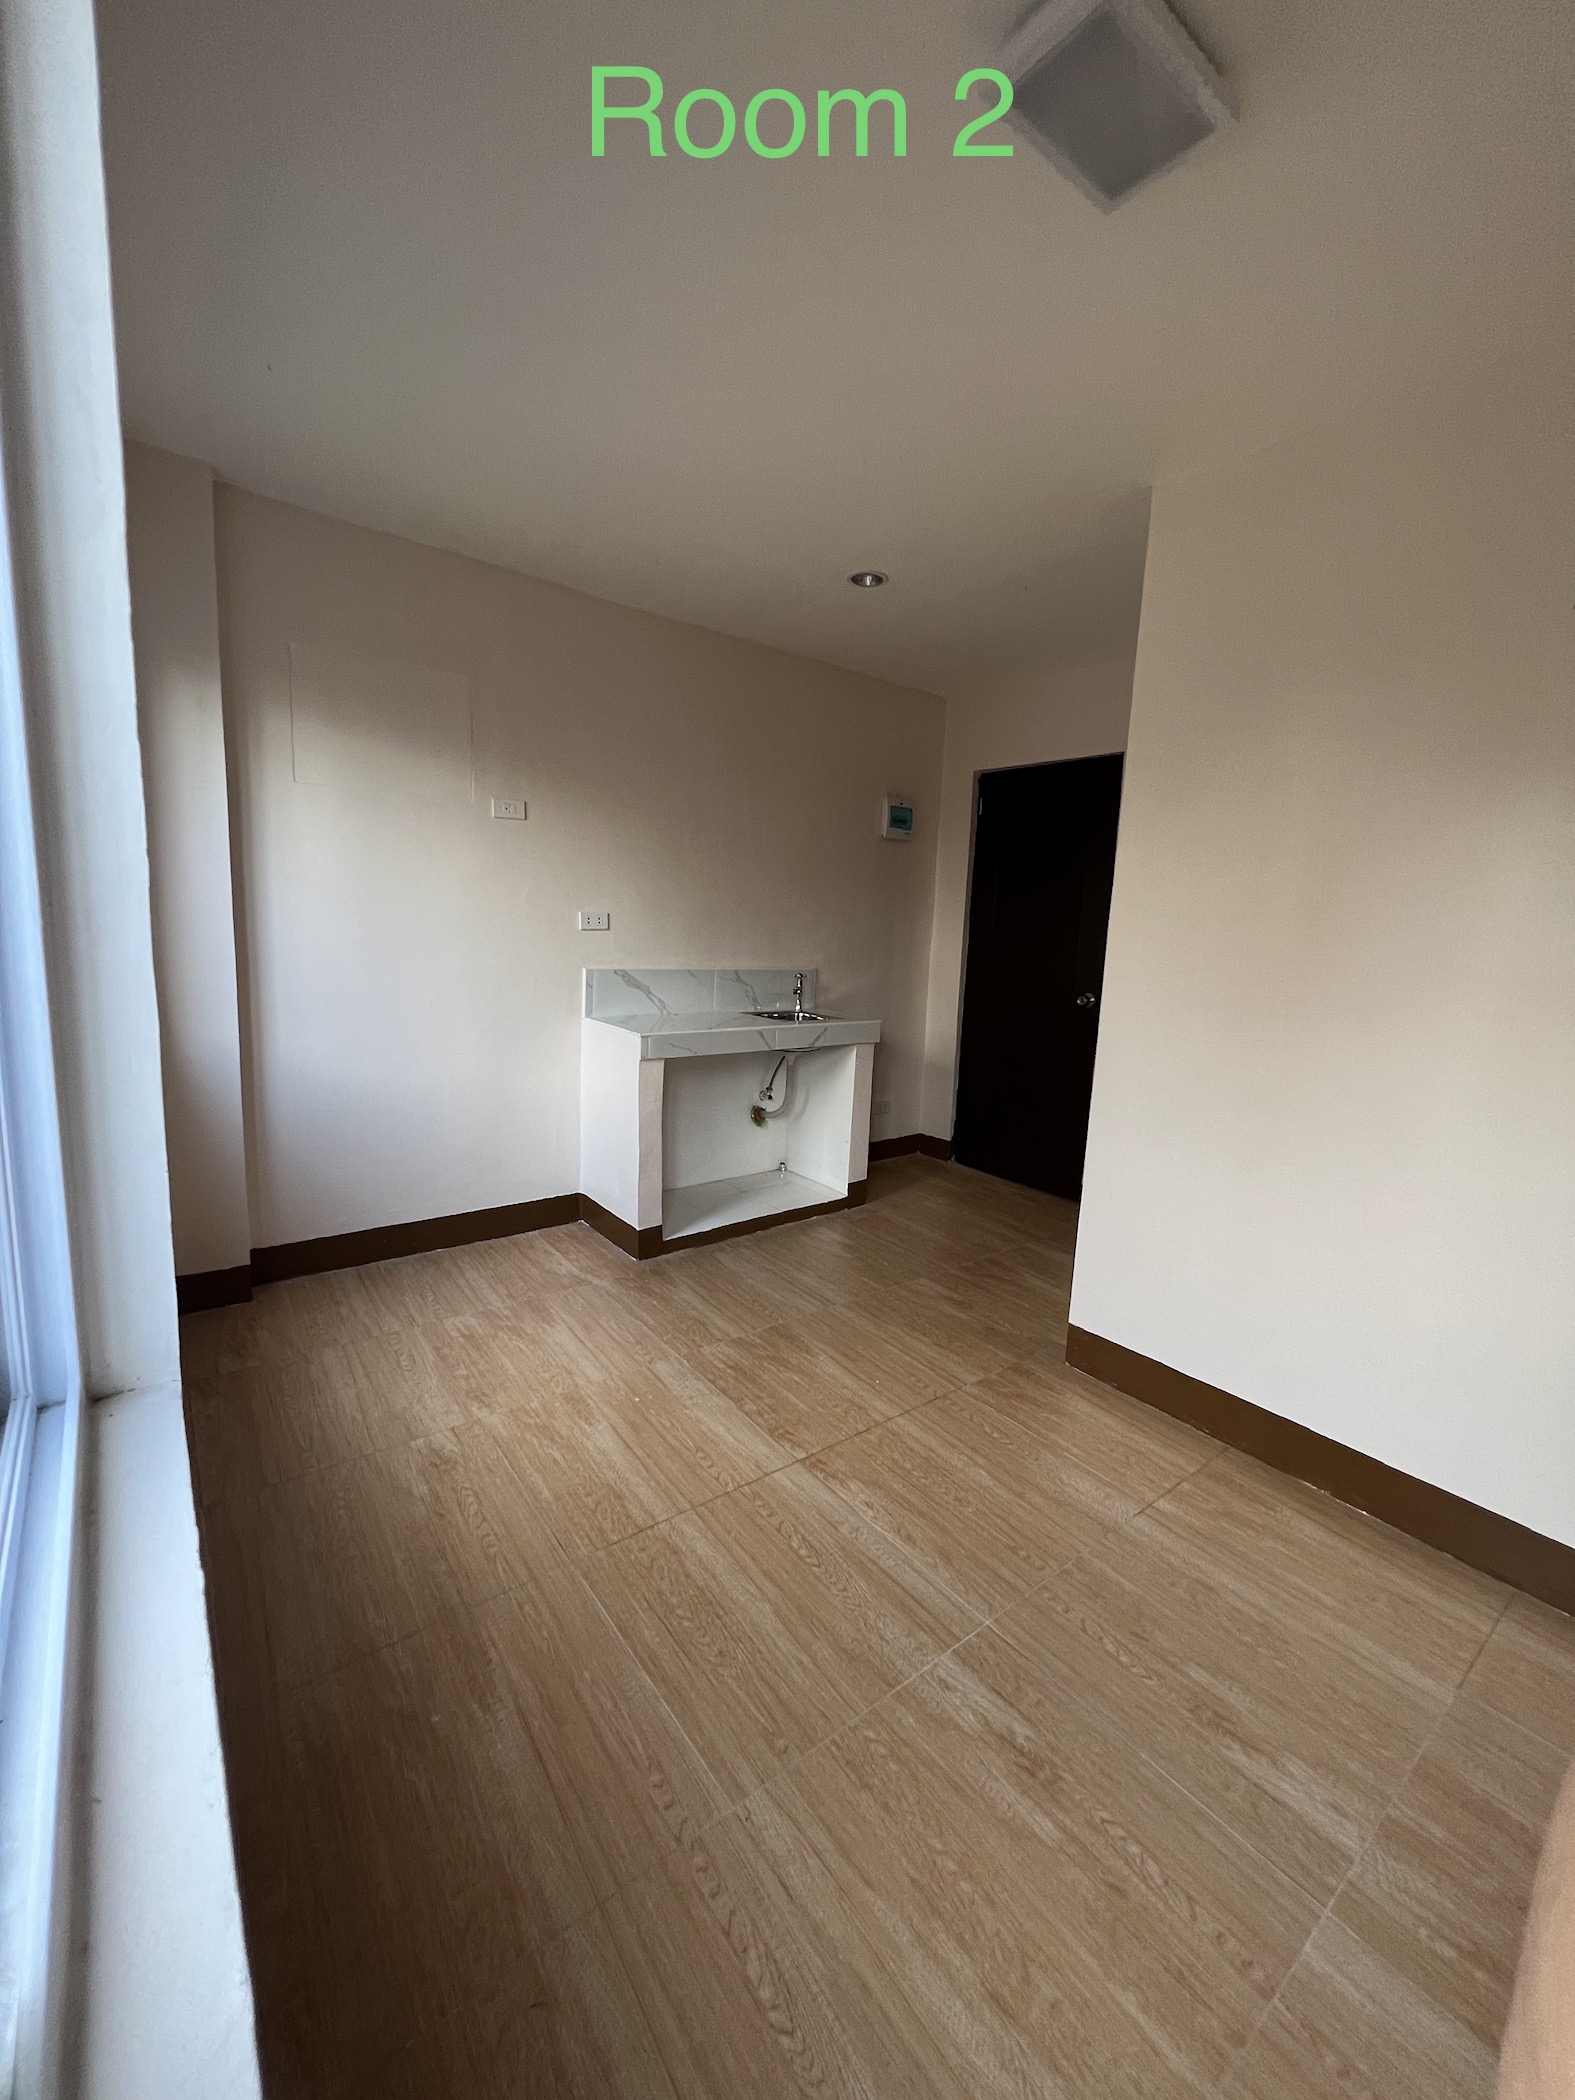 Room for Rent – Studio Type